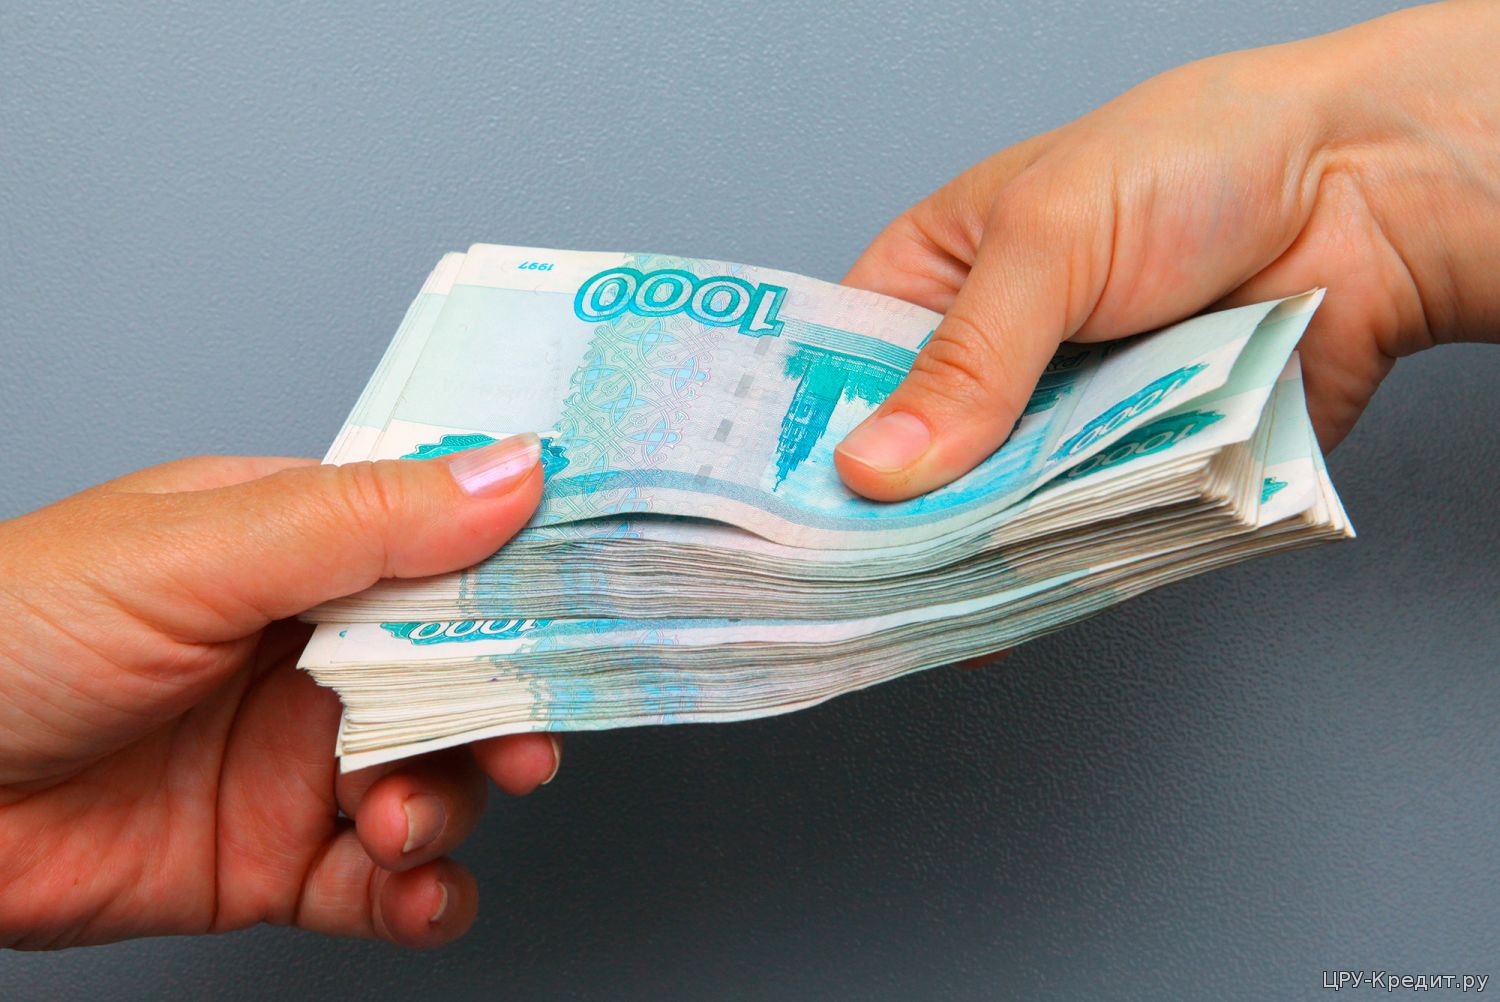 Как можно получить займы в Нижнем Новгороде на выгодных условиях?